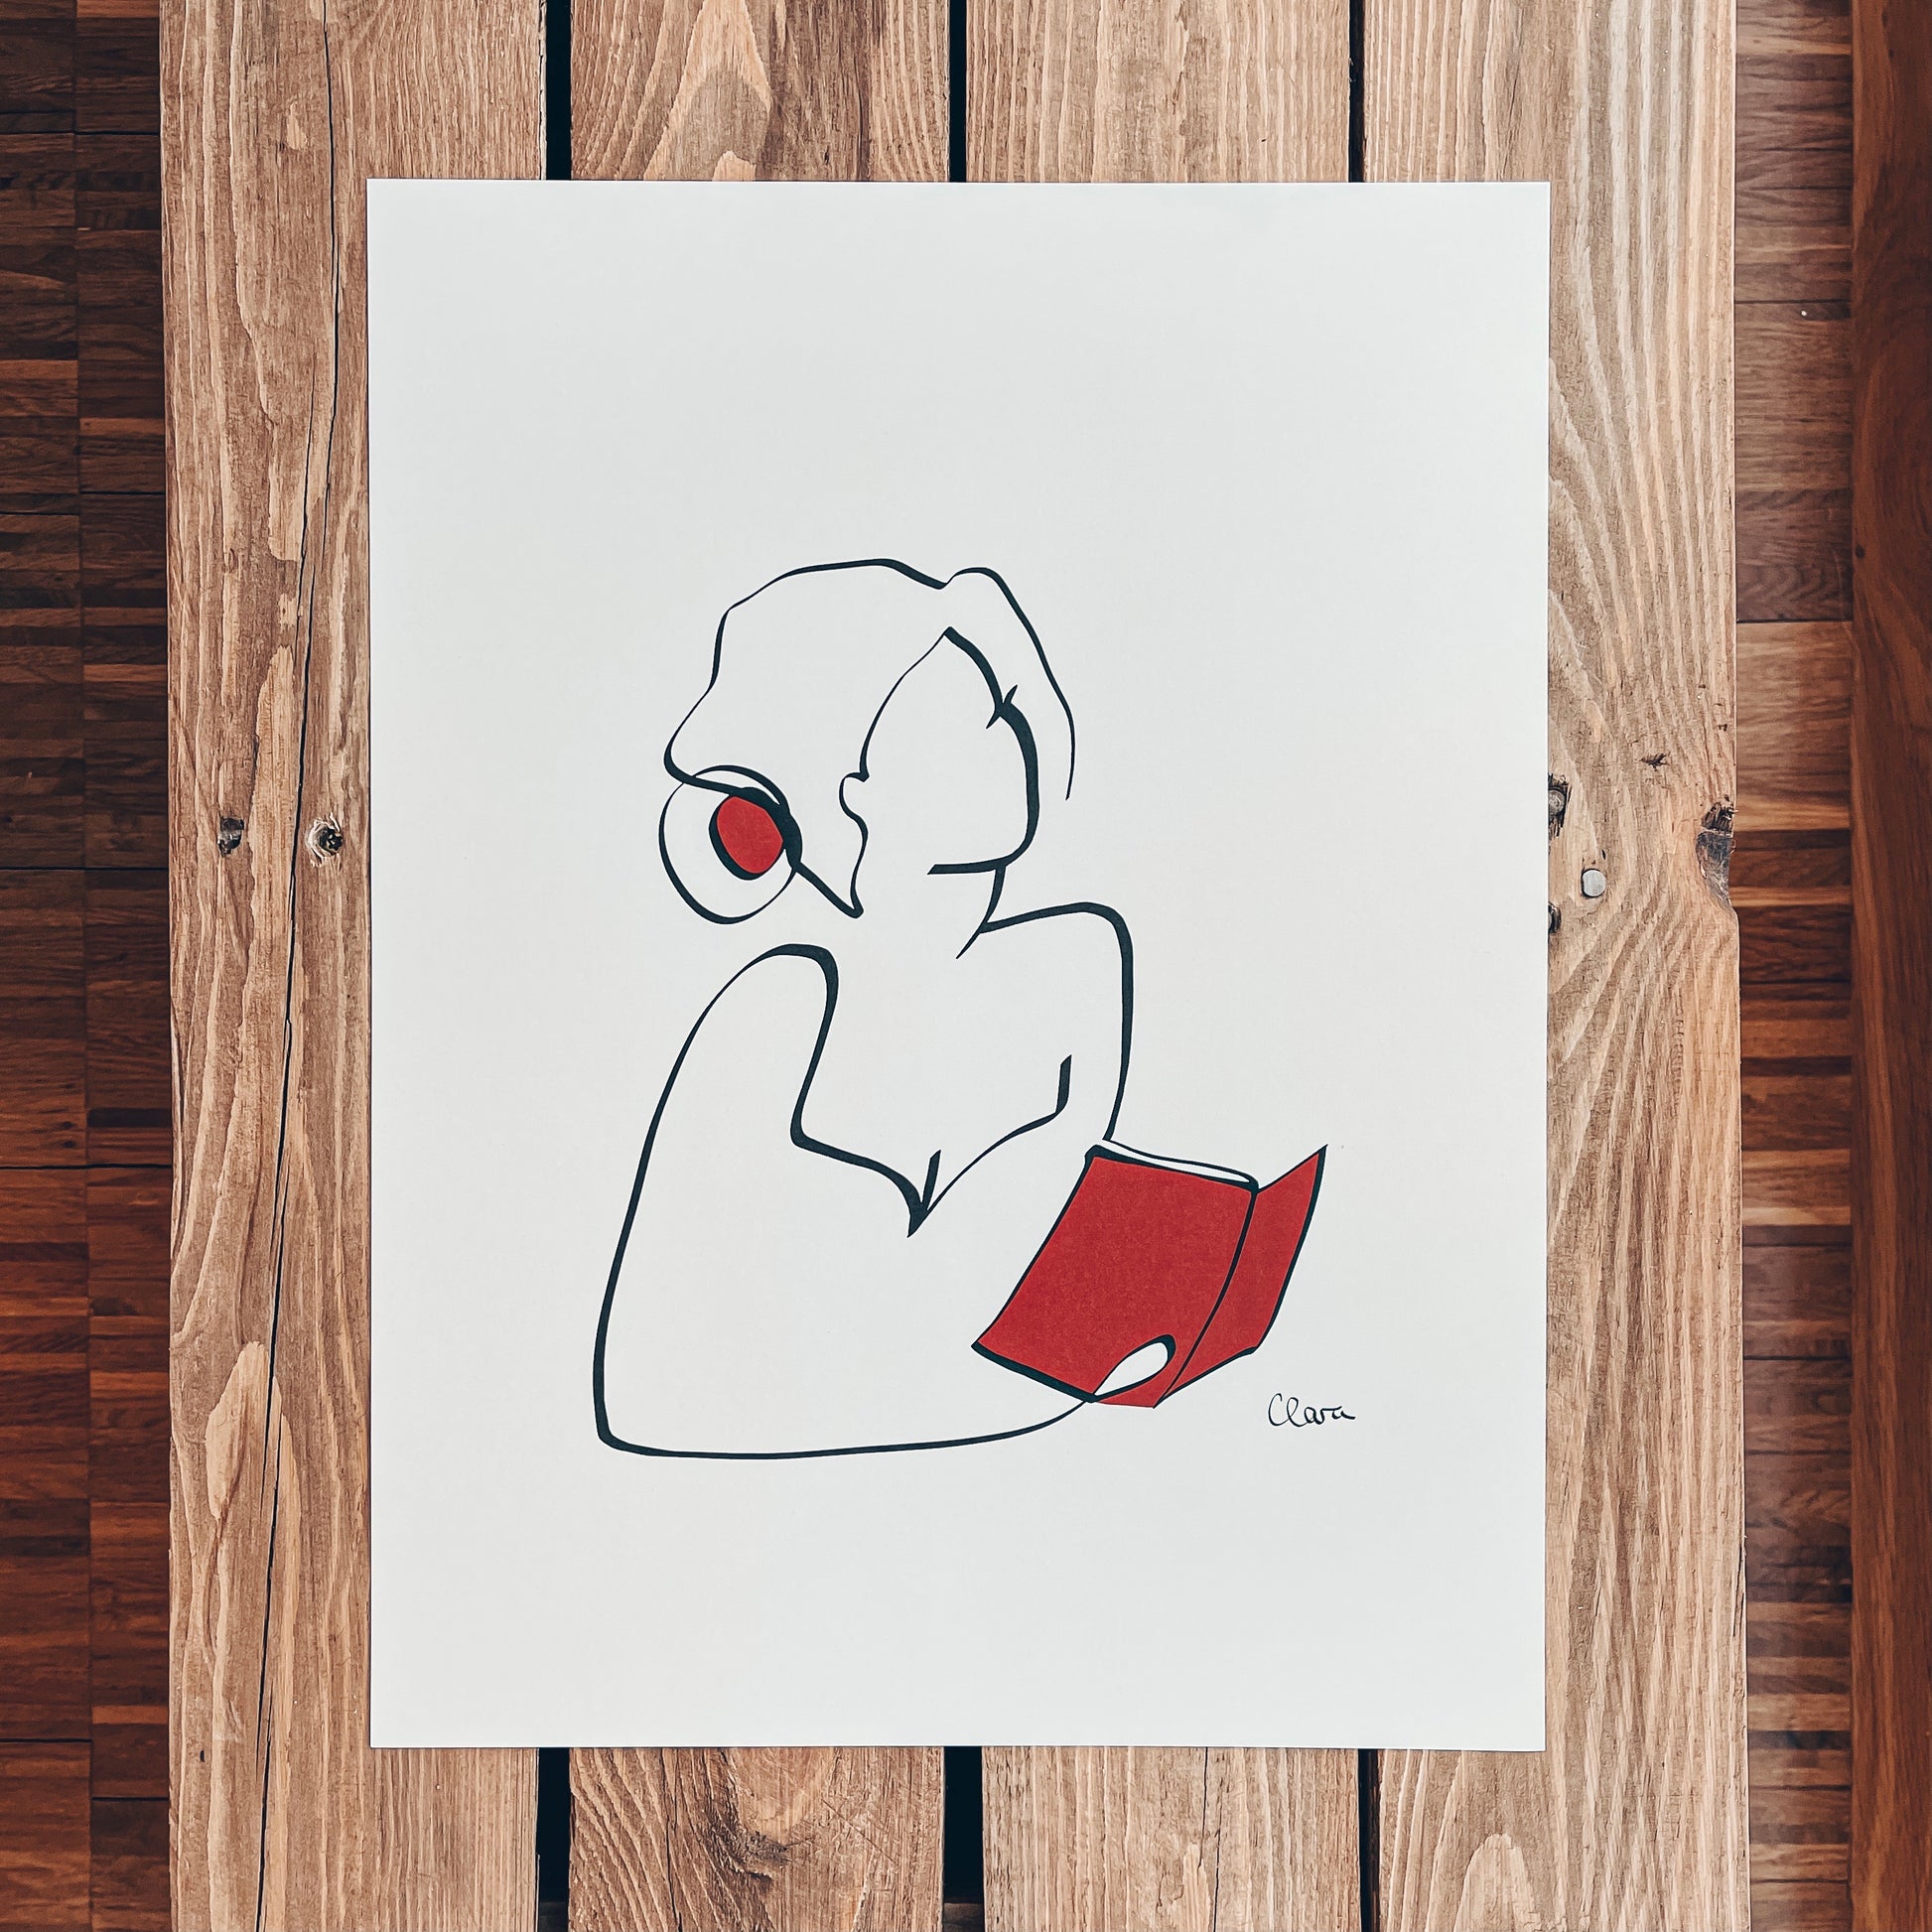 Frauen und Bücher Nr. 6-Kunstdruck-JUDITH CLARA-30x40 cm *Limited* (creme weiß) Papier 300g-one-line-art